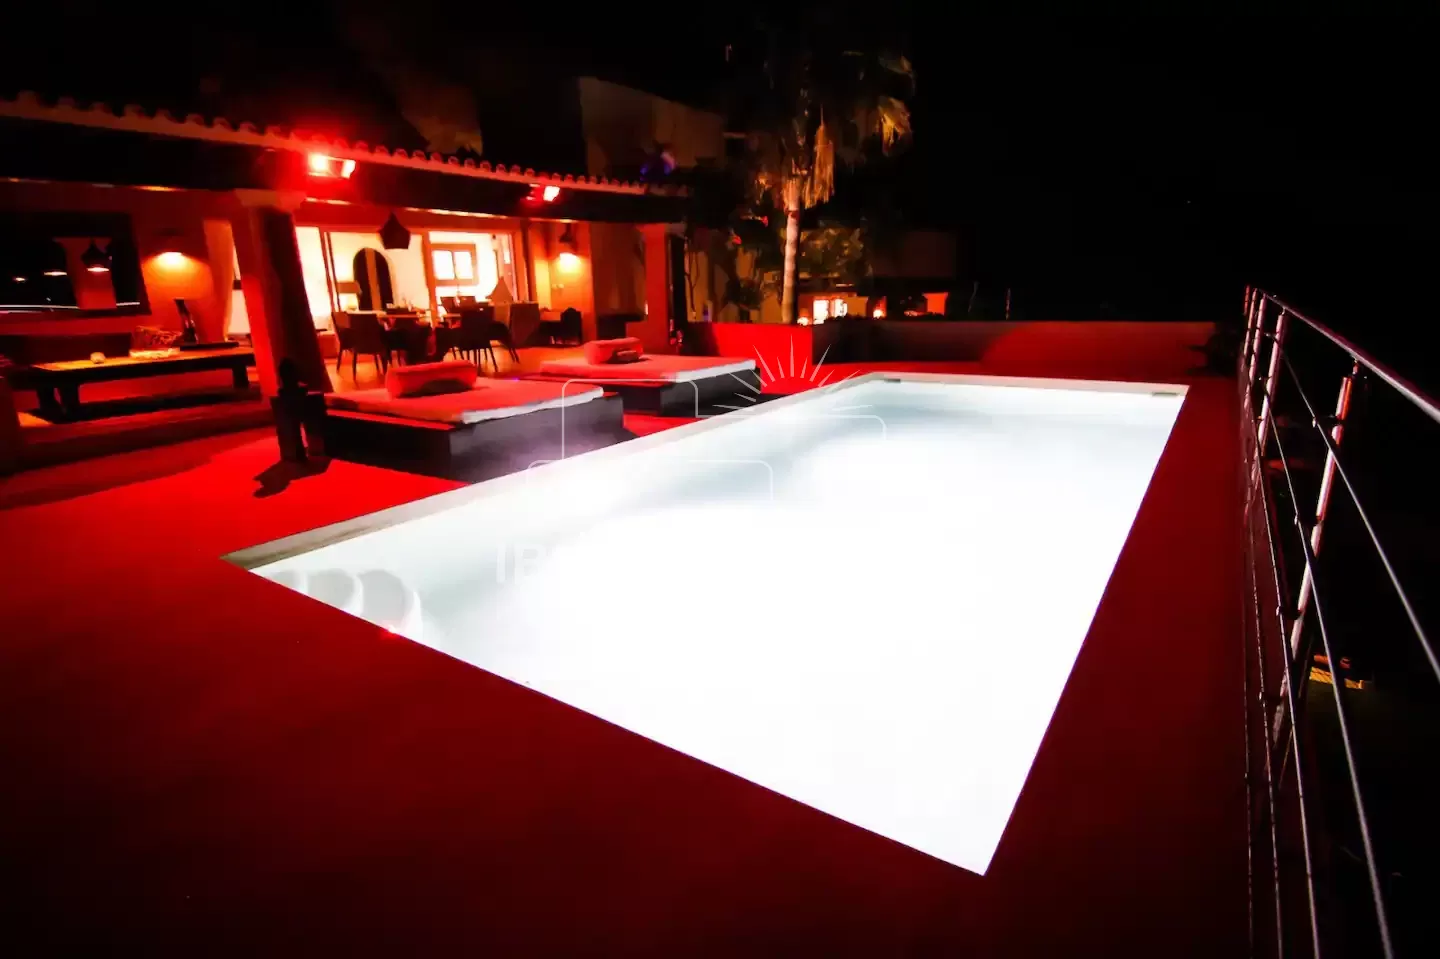 Villa Violeta 4 slaapkamer villa met een prachtig zicht op Ibiza stad